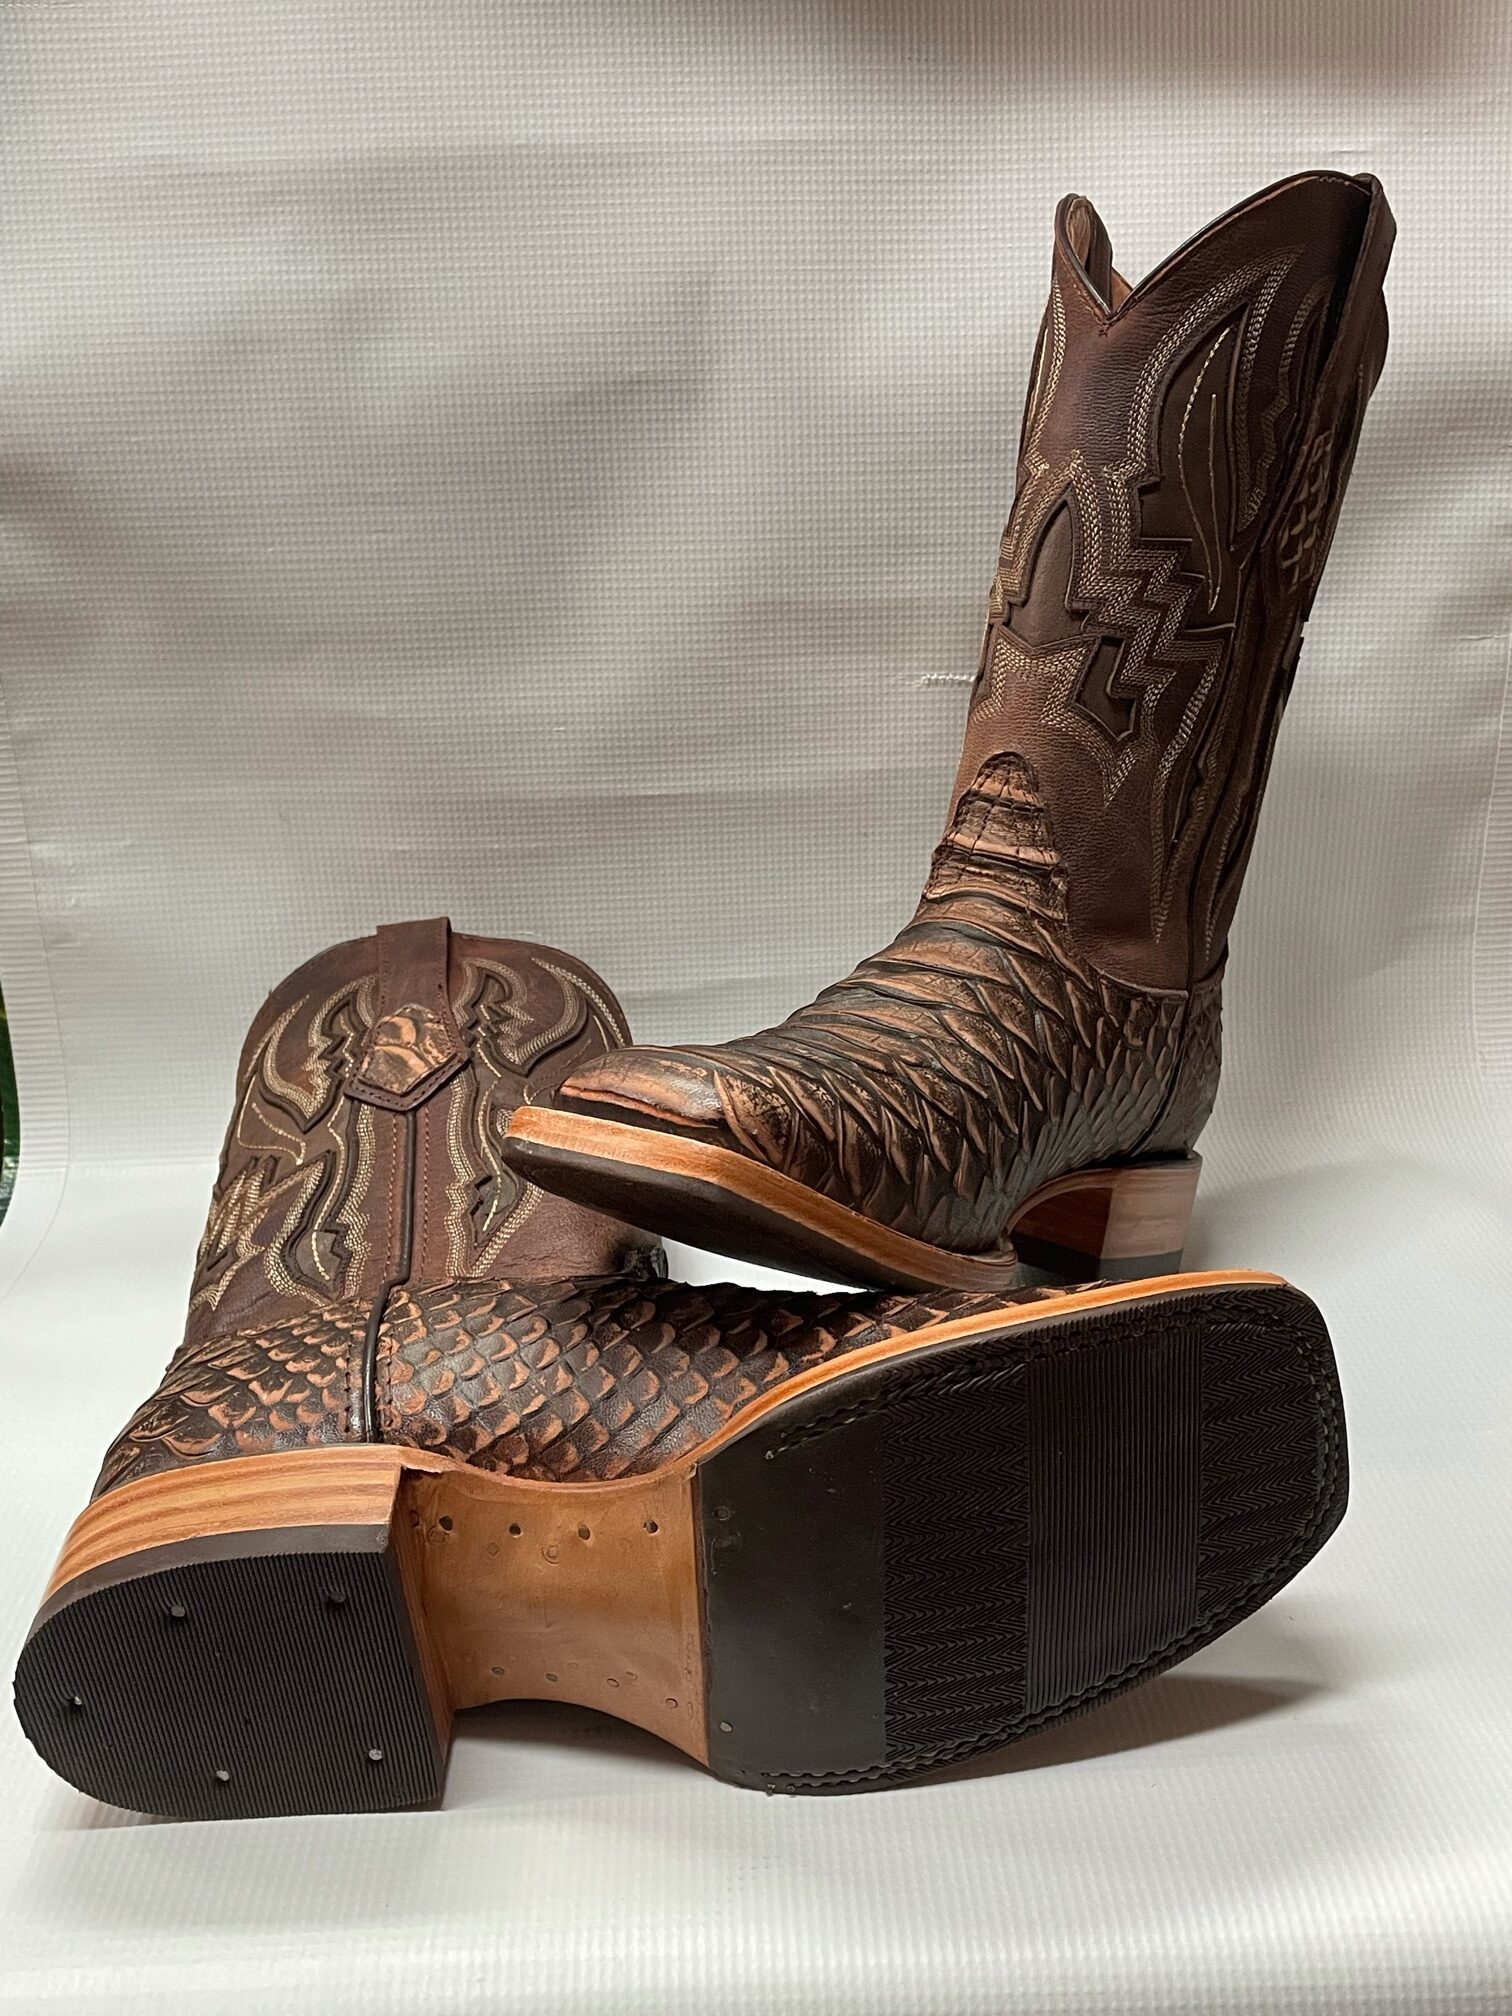 Bulldog Piton-Jumpo Coganc Rustico Boot - Guerrero's Boots Western Wear